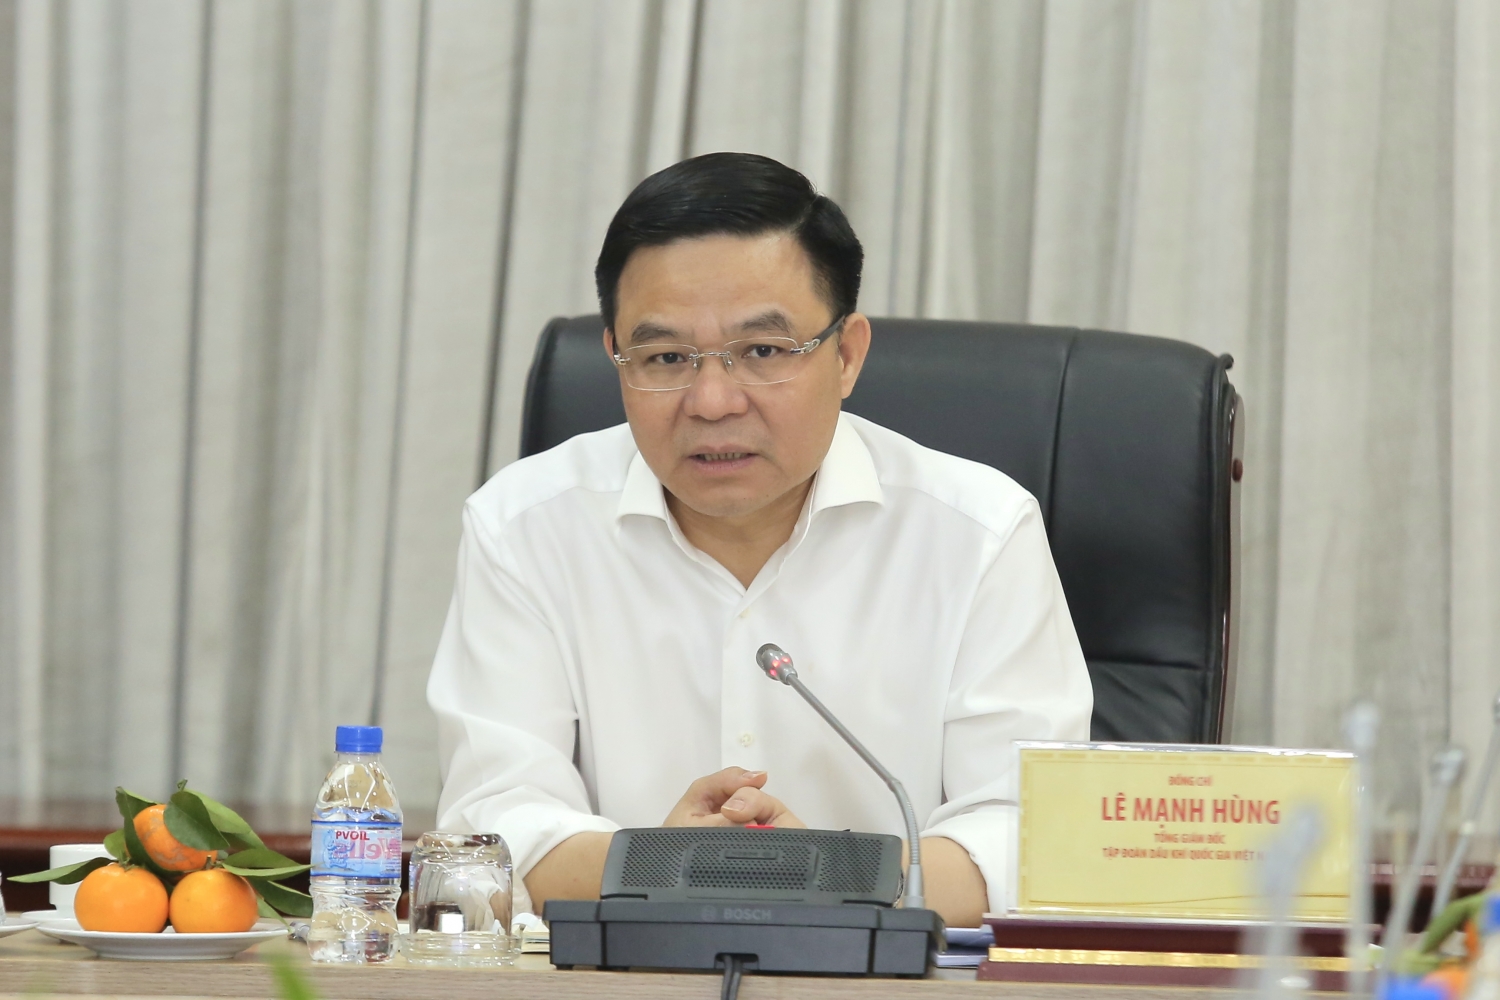 Tổng Giám đốc Petrovietnam Lê Mạnh Hùng phát biểu chỉ đạo